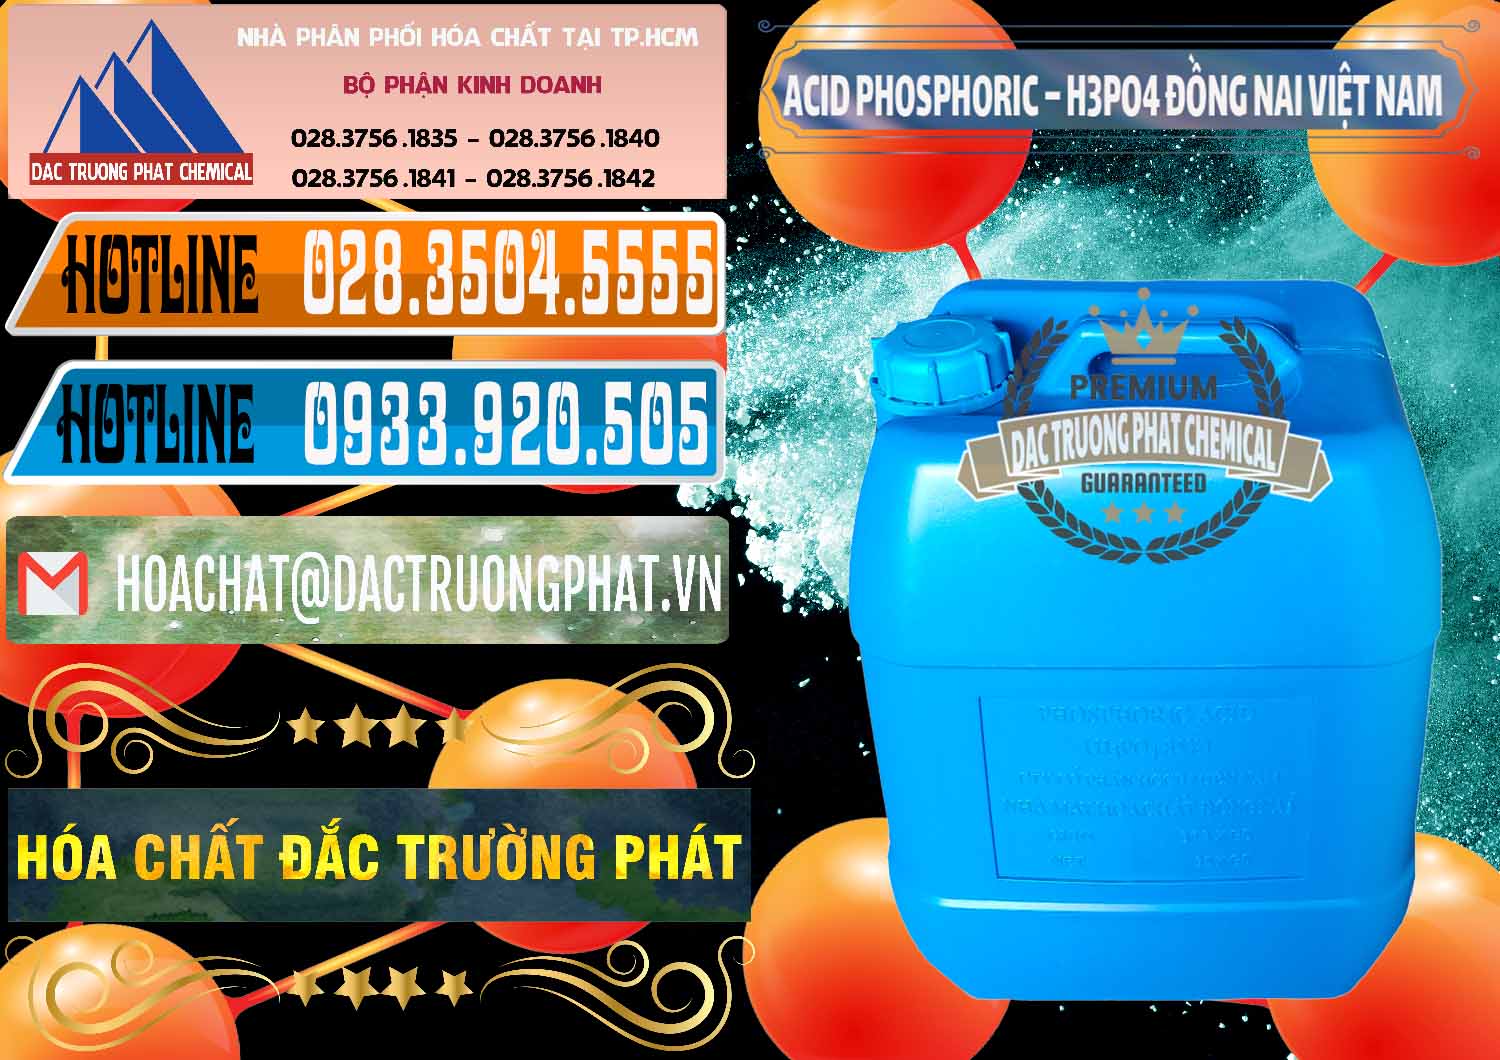 Cty cung cấp và phân phối Acid Phosphoric – Axit Phosphoric 85% Đồng Nai Việt Nam - 0183 - Kinh doanh - phân phối hóa chất tại TP.HCM - stmp.net